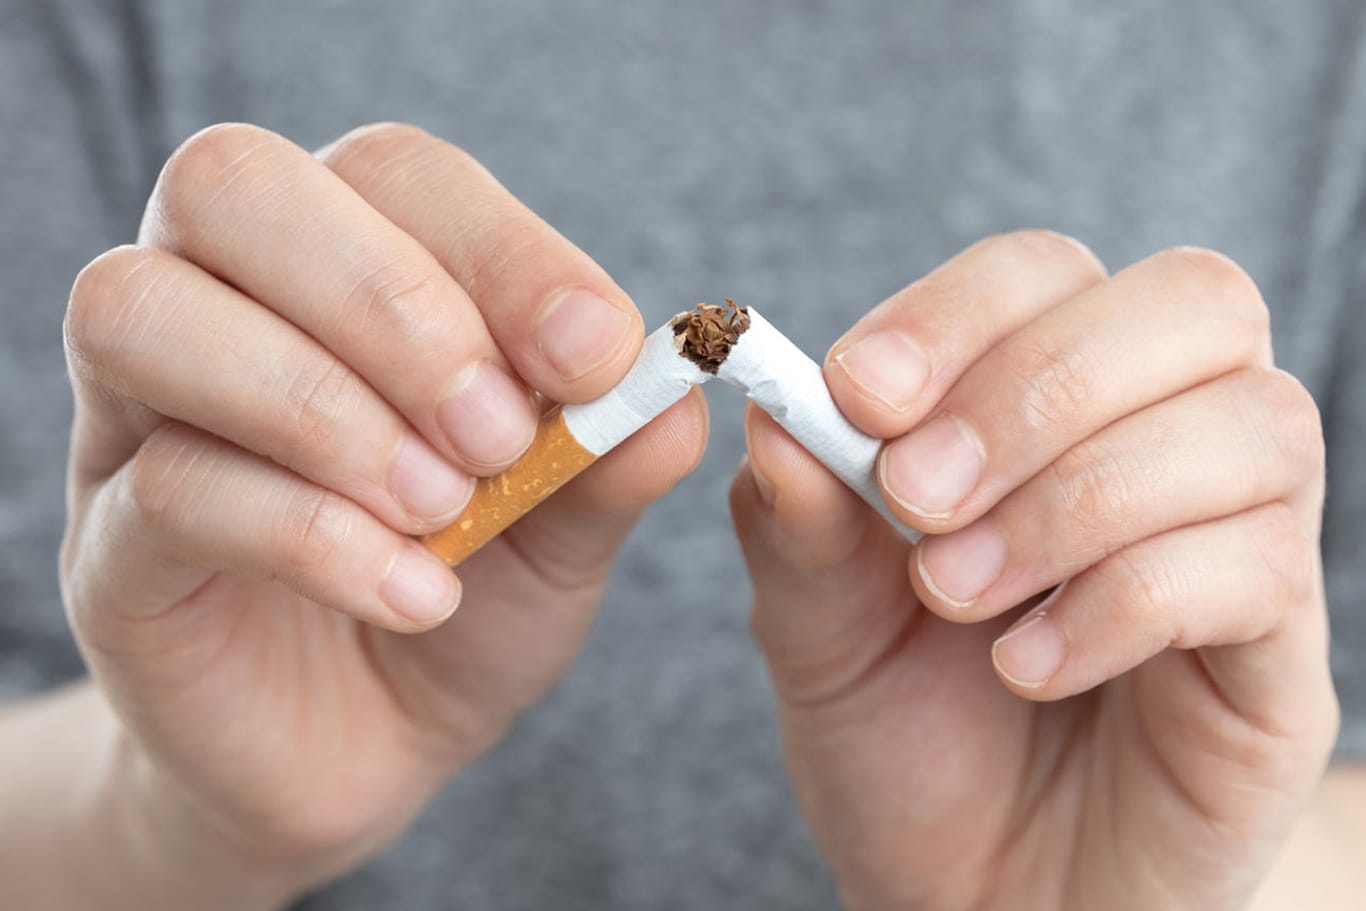 Zigarette: Wenn Sie mit dem Rauchen aufhören wollen, starten Sie besser nicht montags.